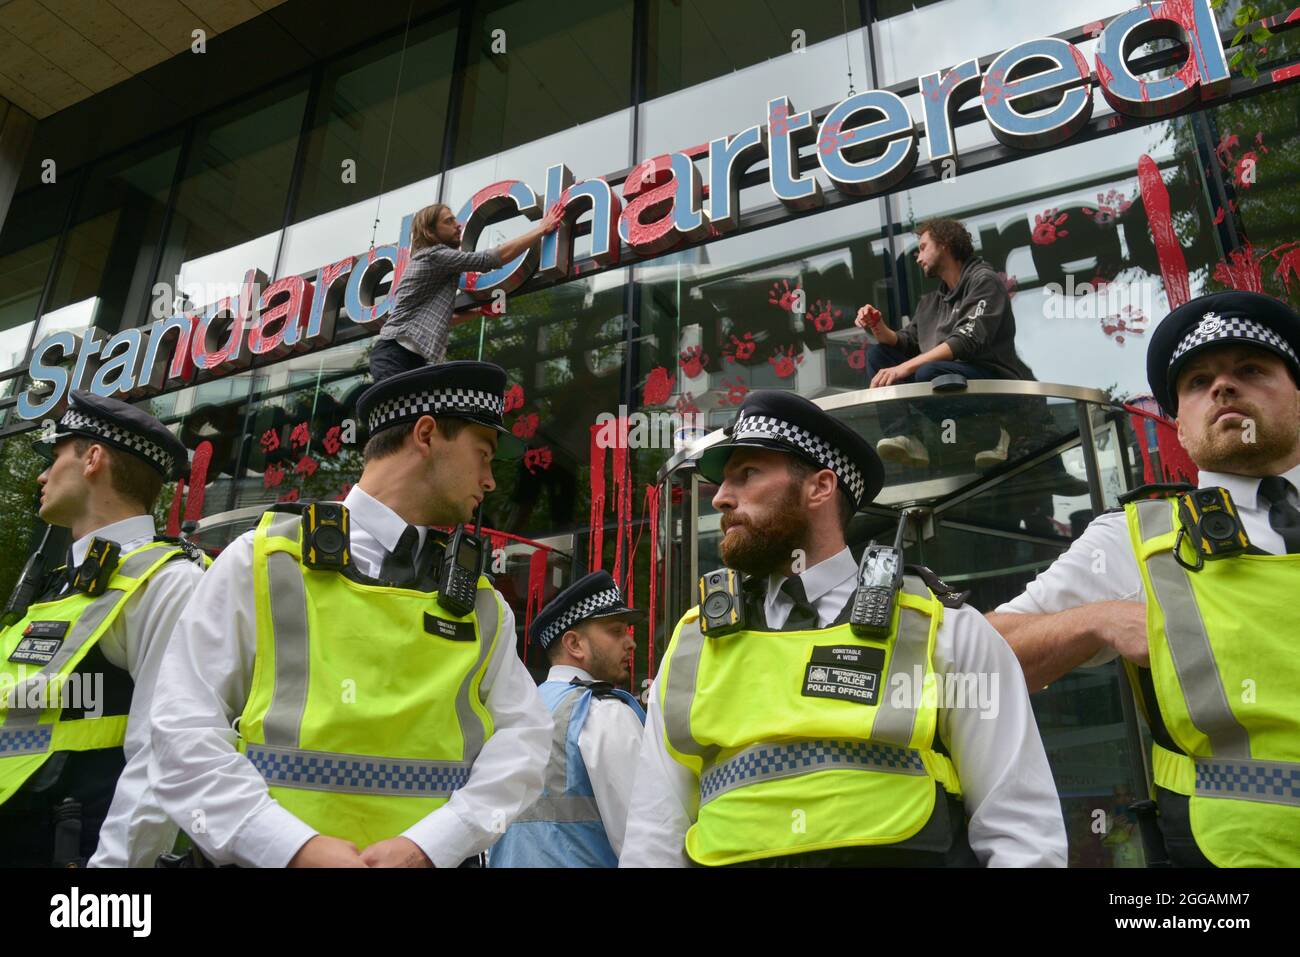 Die Polizei der Stadt London vor der Standard Chartered Bank, wo Umweltaktivisten rote Farbe an den Eingang der Bank warfen und Handmarken hinterließen Stockfoto